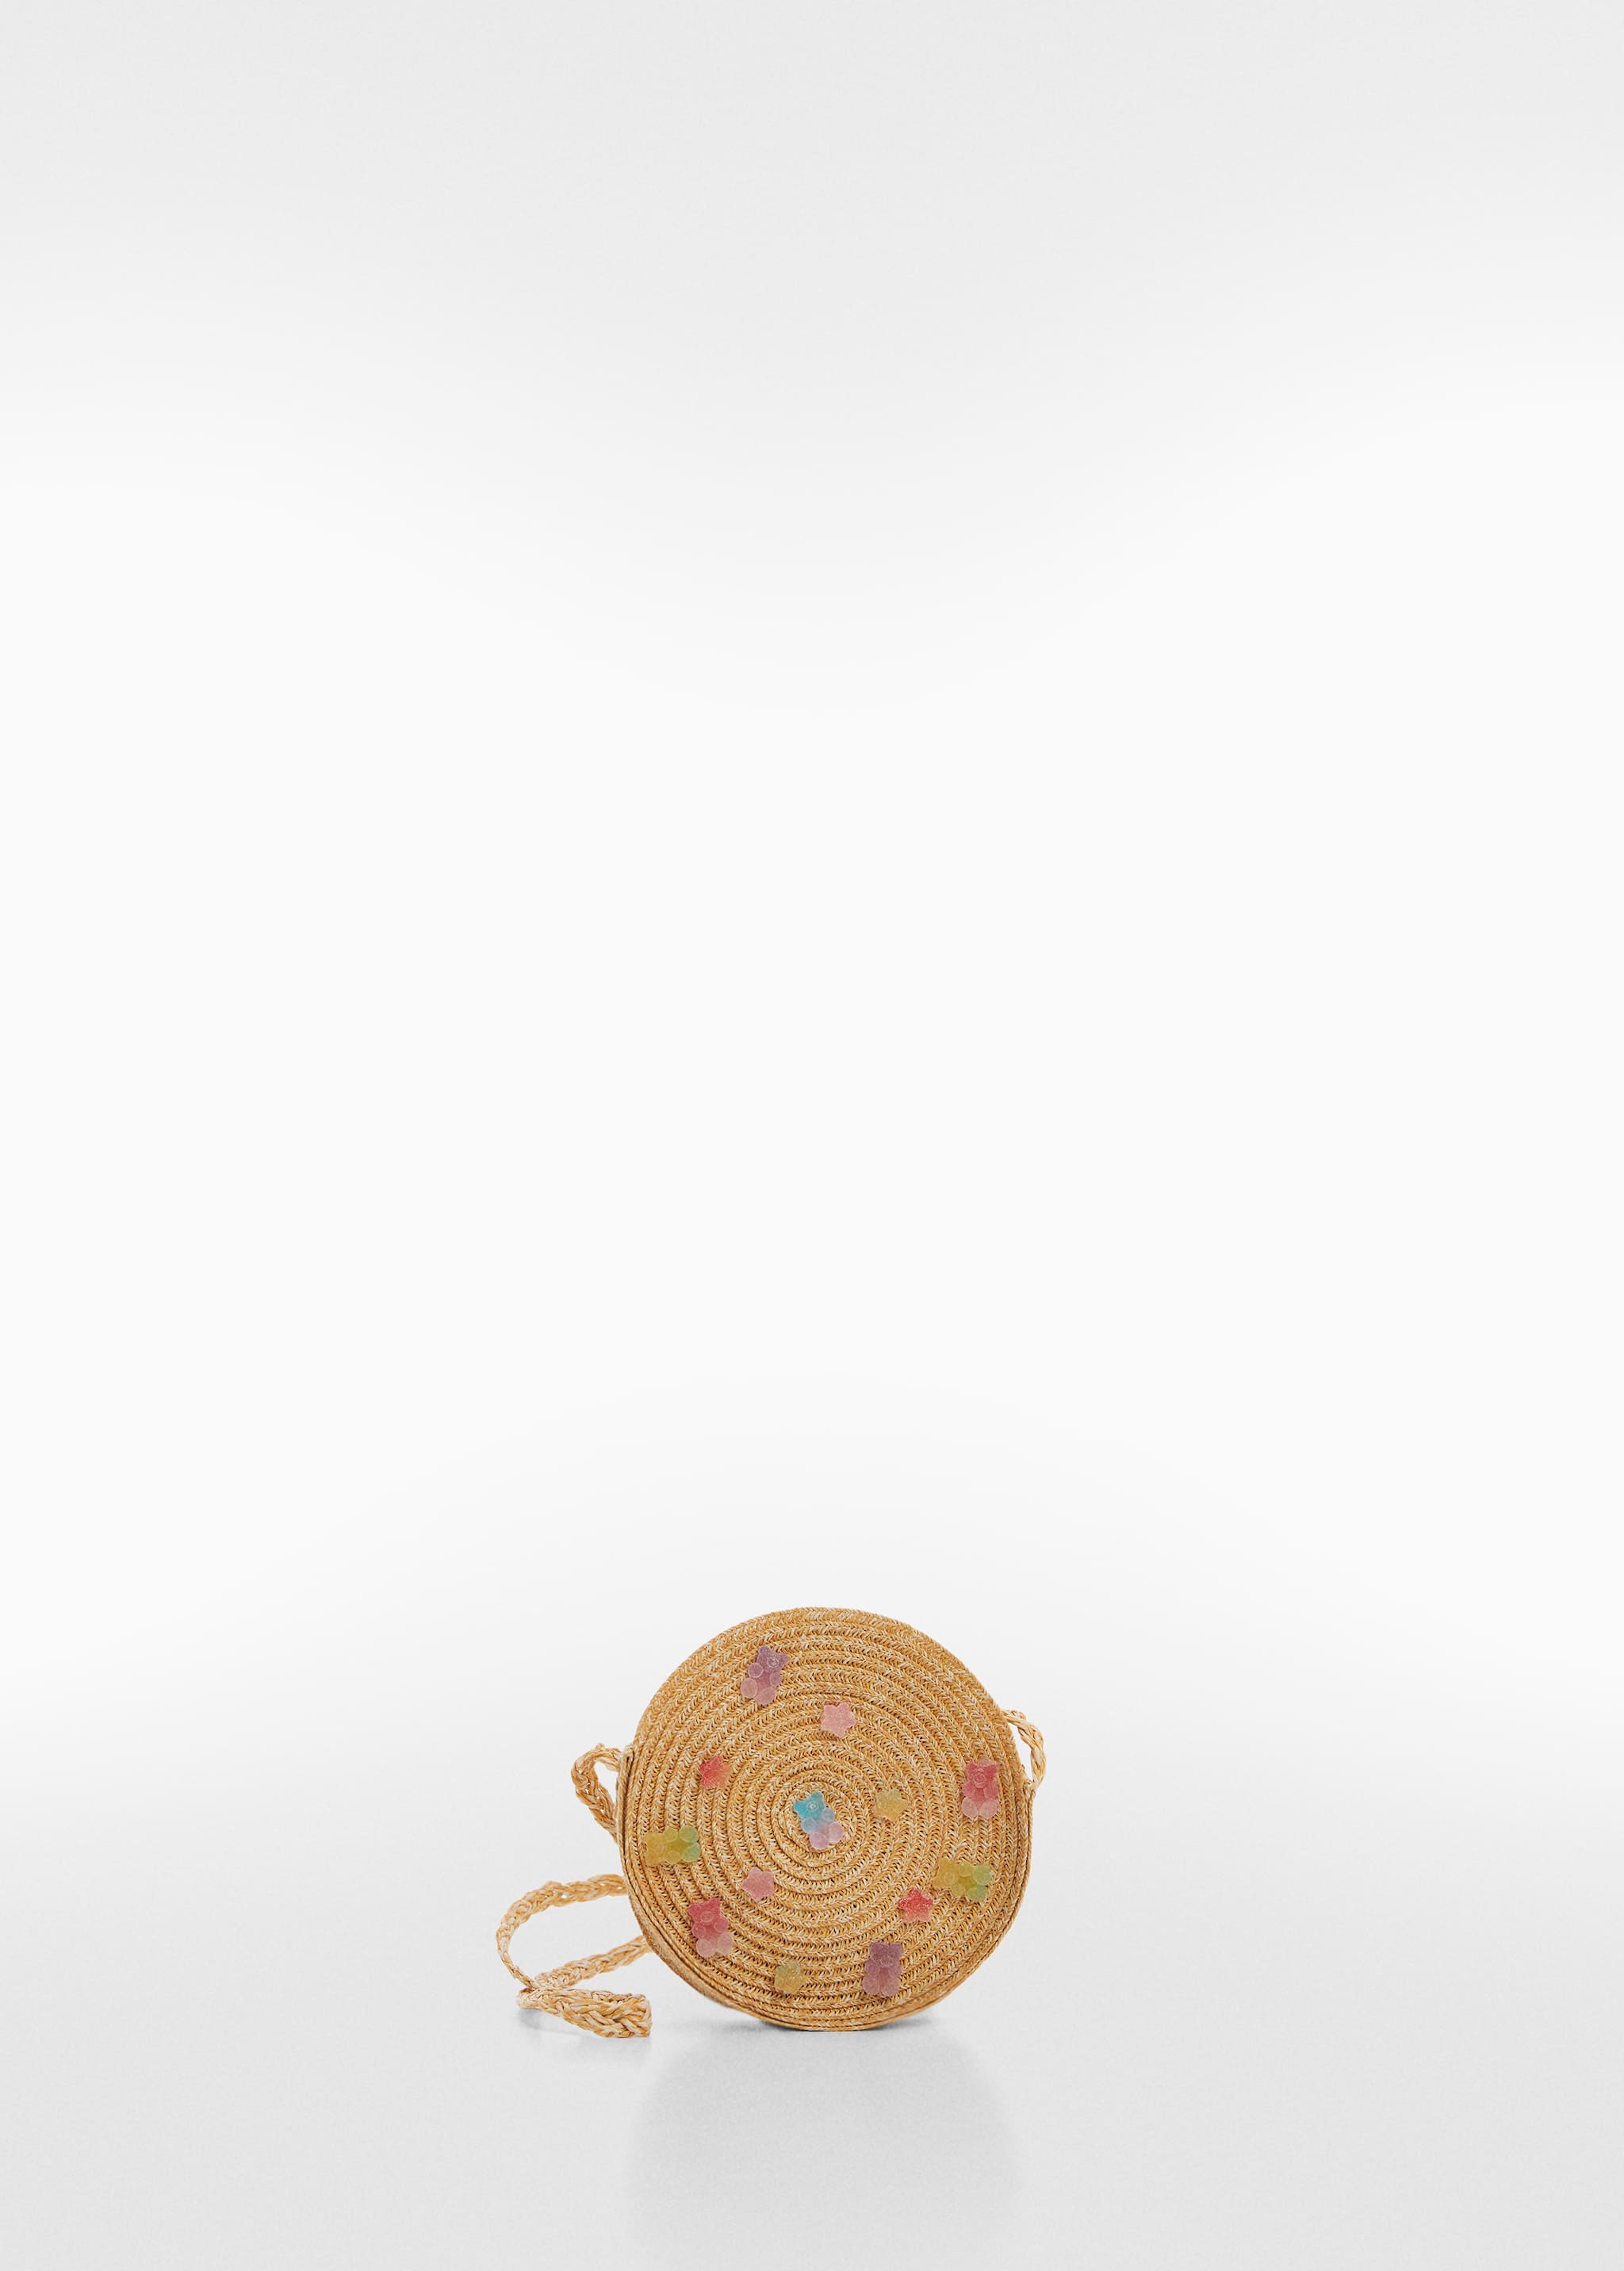 Круглая сумка со сладостями - Изделие без модели